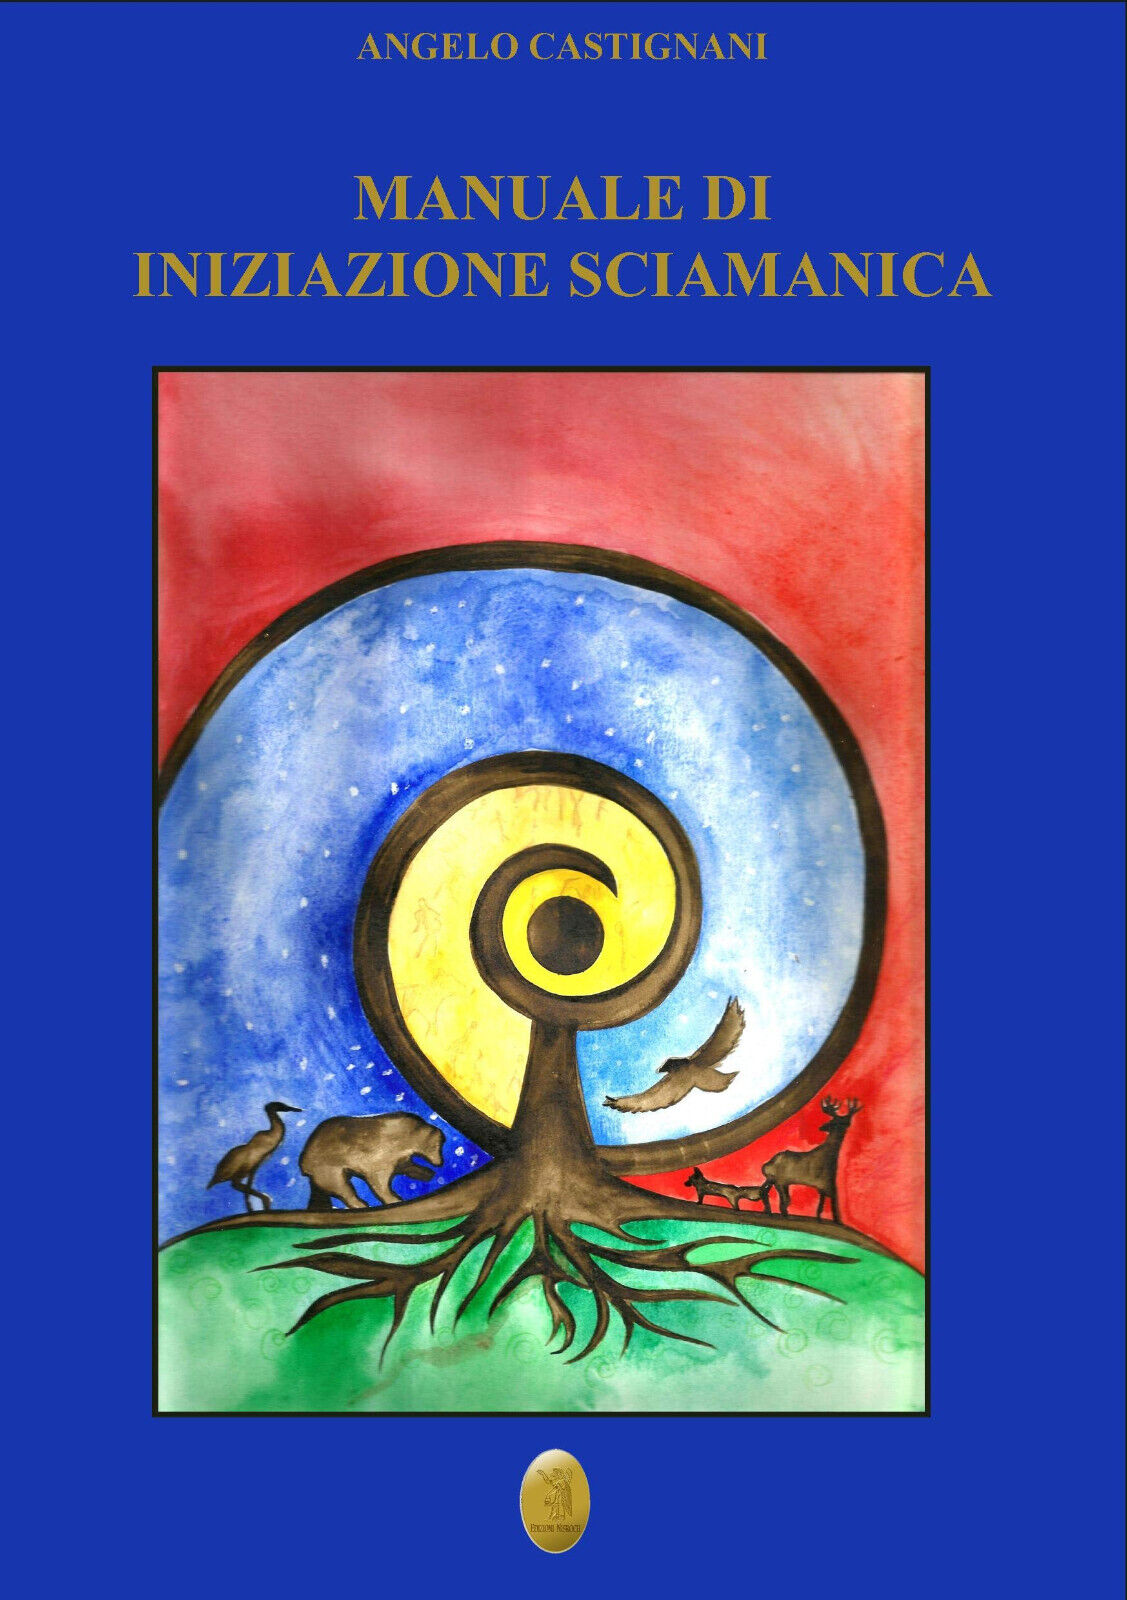 Manuale di iniziazione sciamanica - Angelo Castignani - Nisroch, 2020 libro usato